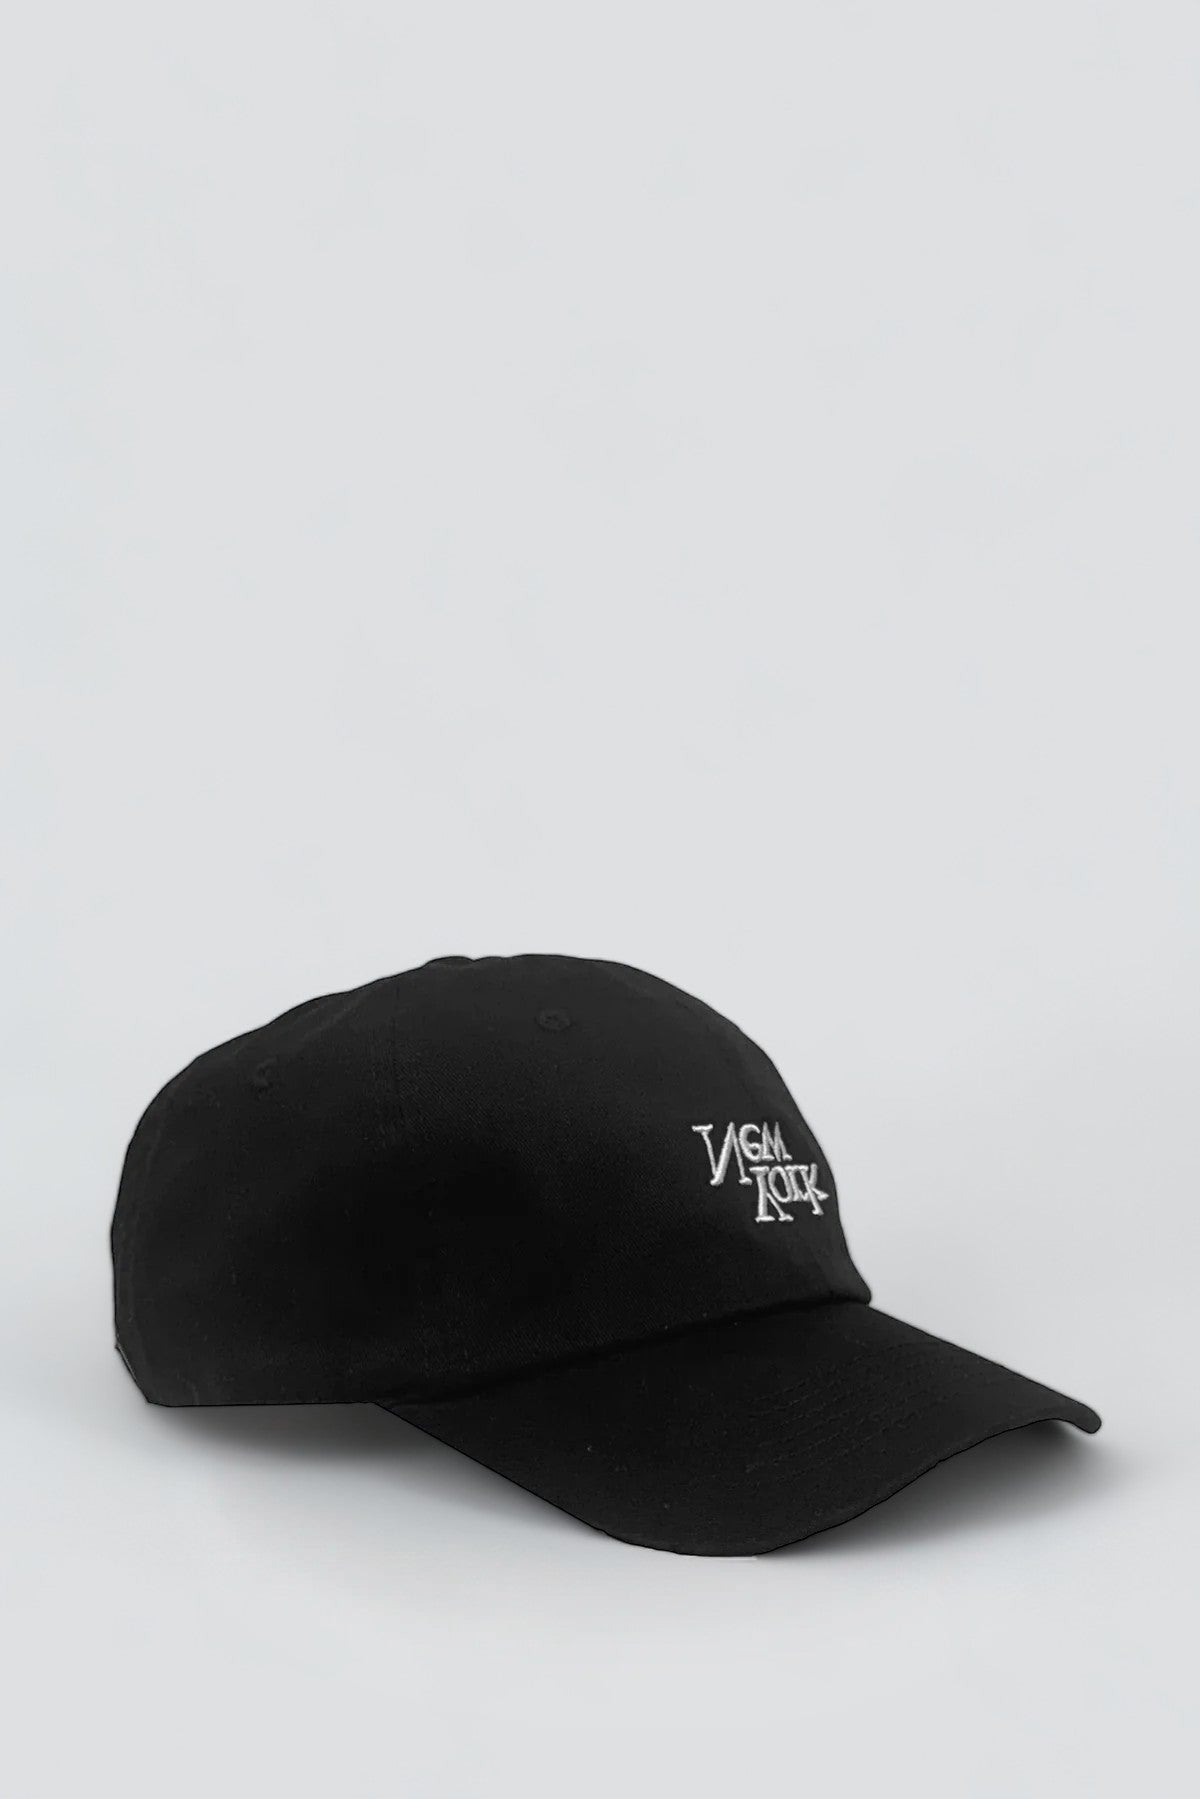 New York V2 Embroidered Hat - Black/White